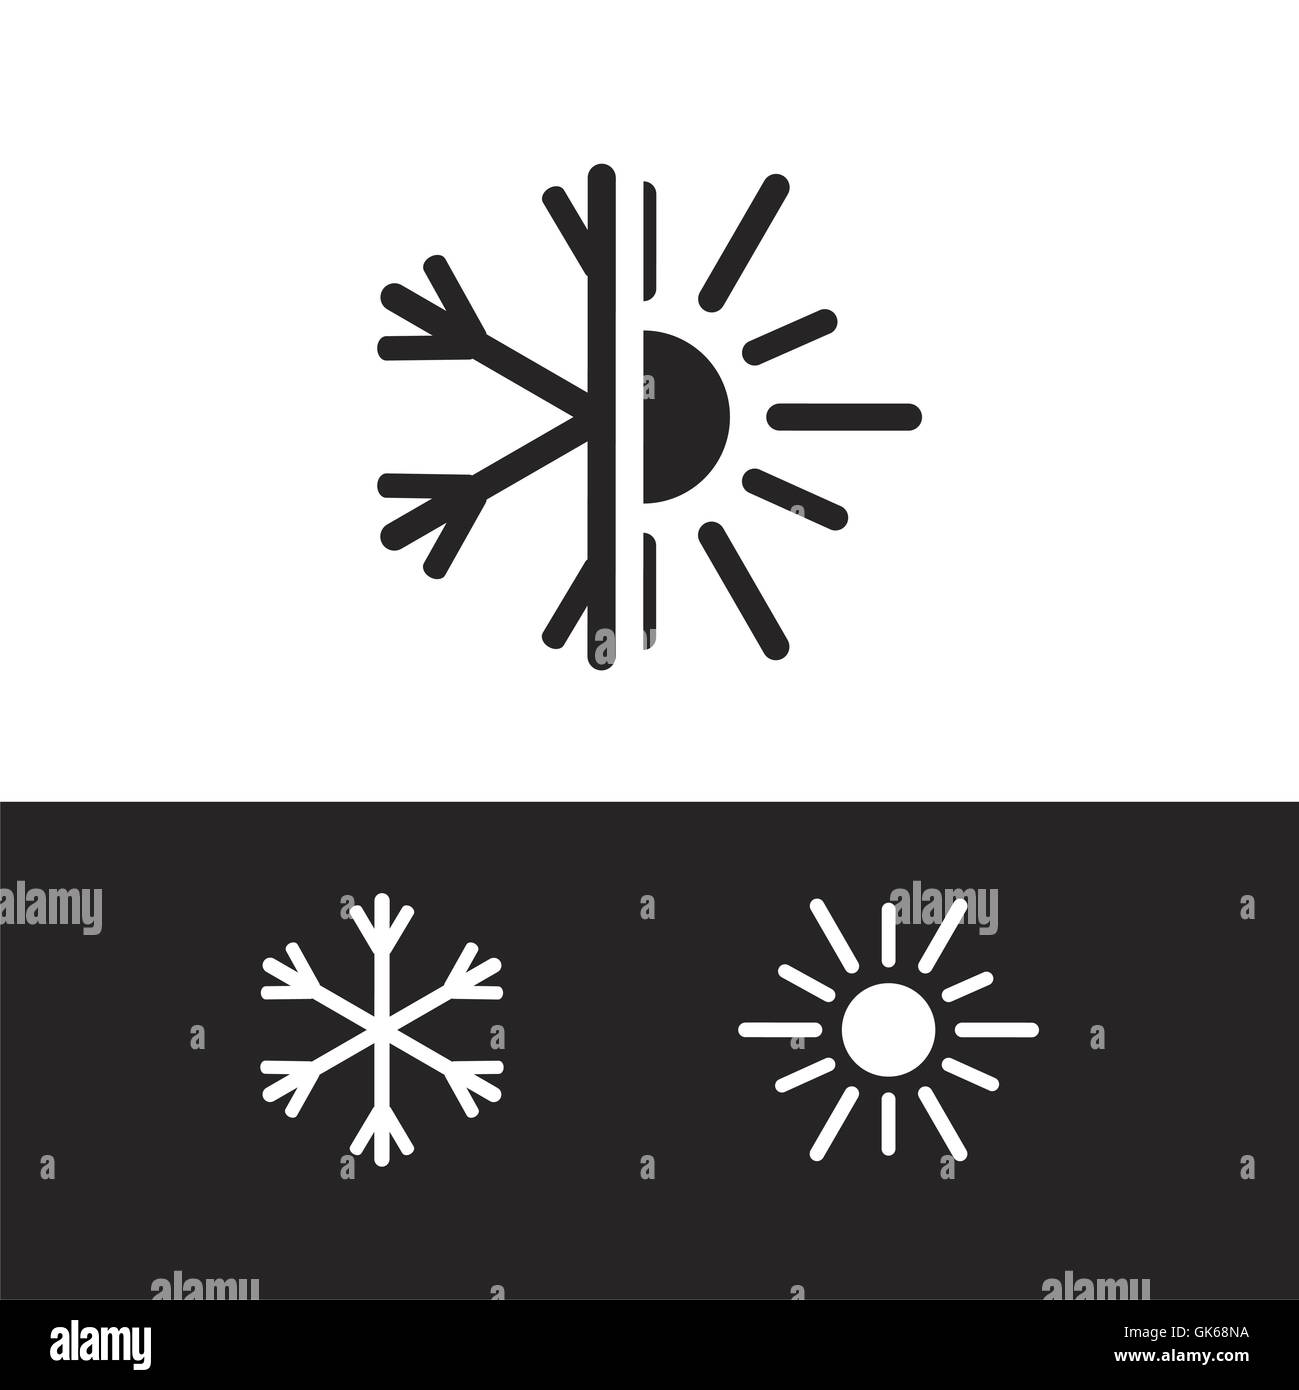 Klimaanlage-Symbol, Natur-Logo, kalt und Warm. Winterschnee, Sunmmer Sonne.  Vektor Stock-Vektorgrafik - Alamy